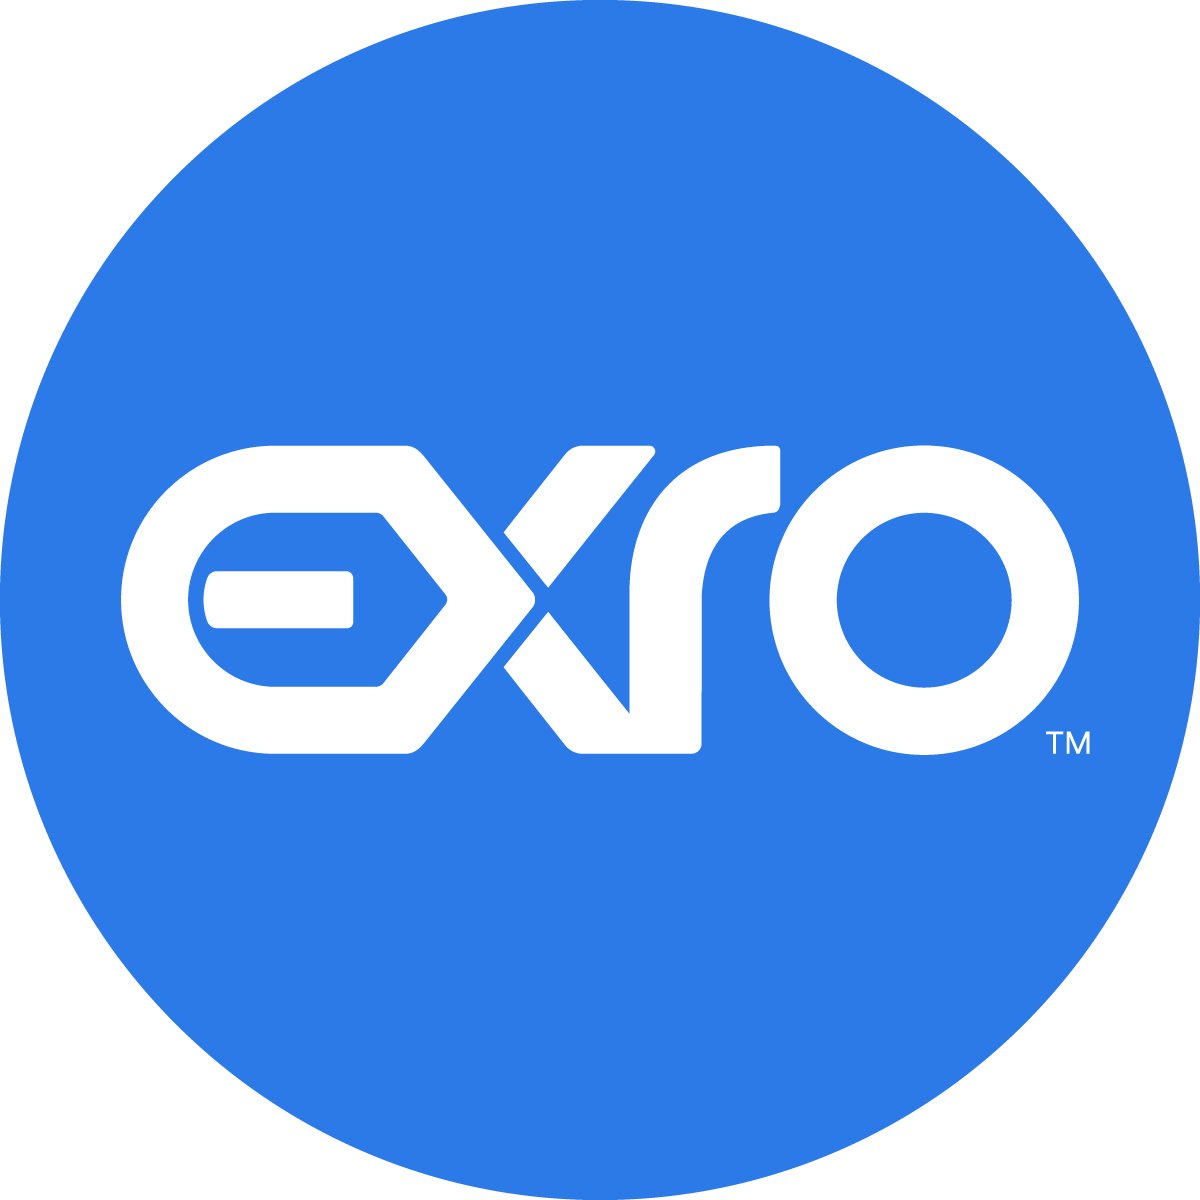 exro-logomark-azure-202108.jpg